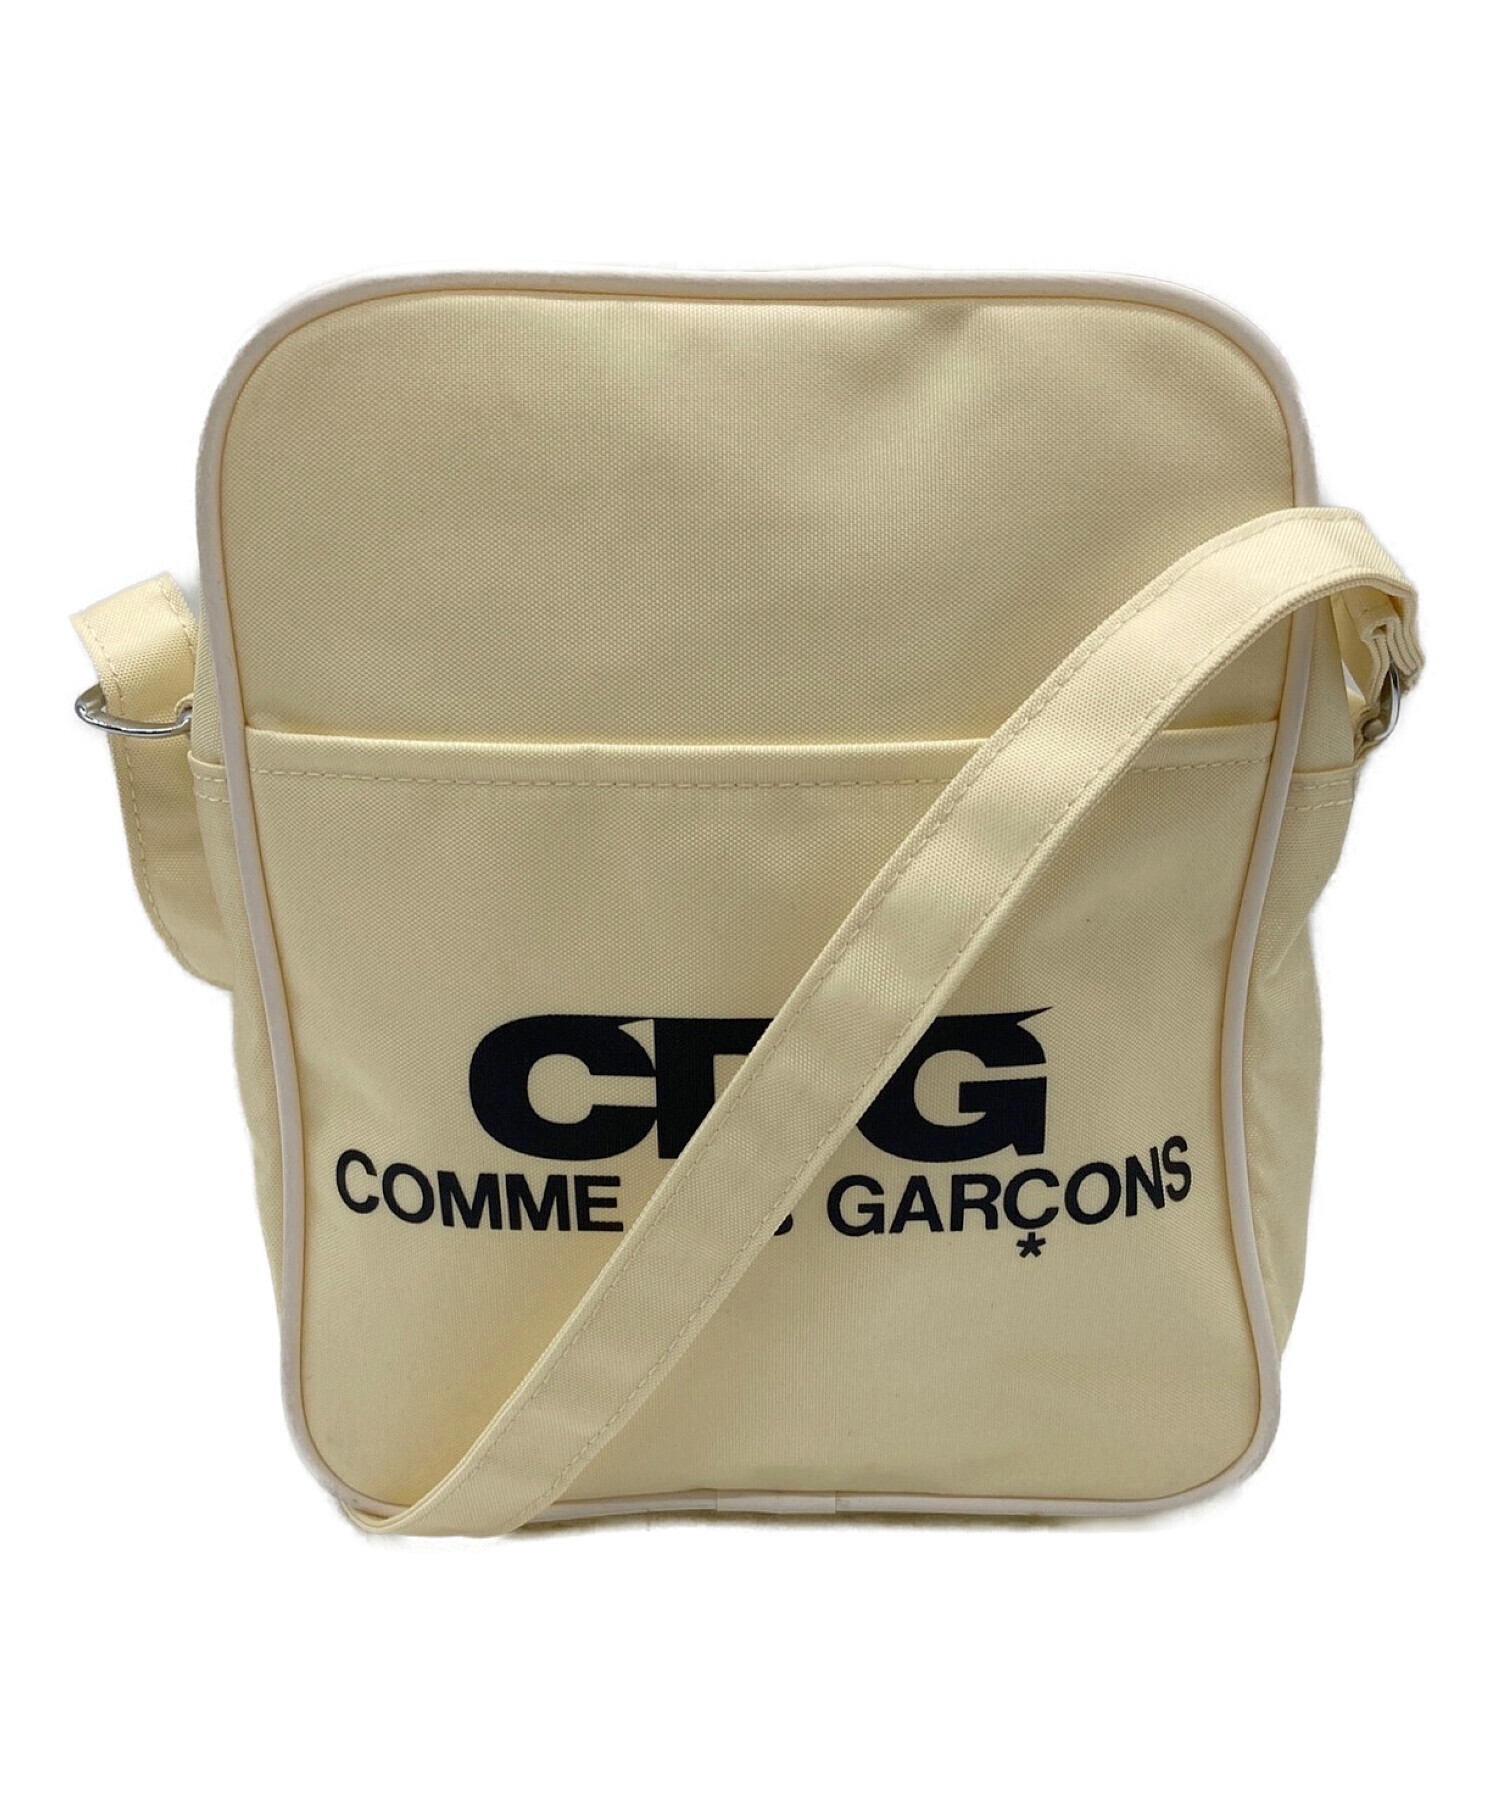 COMME des GARCONS (コムデギャルソン) CDG (シーディージー) ロゴショルダーバッグ ベージュ